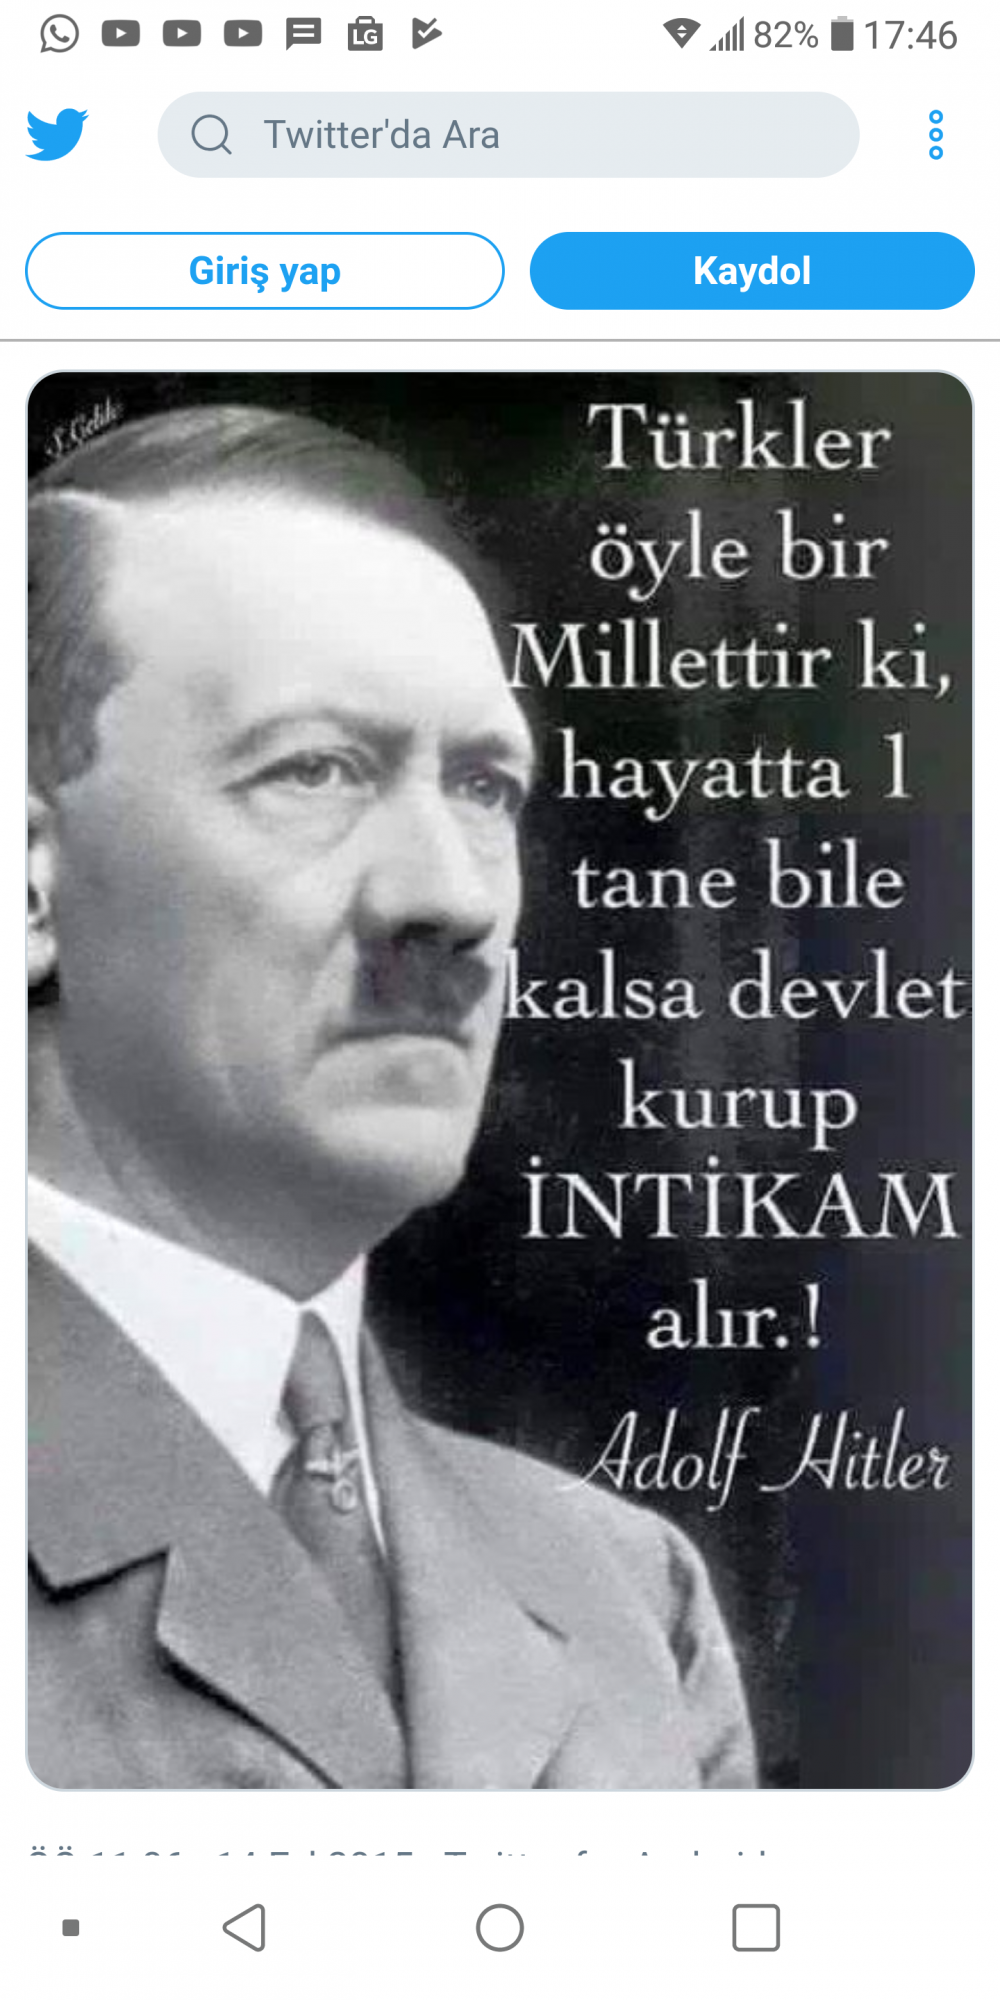 Adolf hitlerin türkler hakkındaki sözü açıklamaya bakarmısınız ?